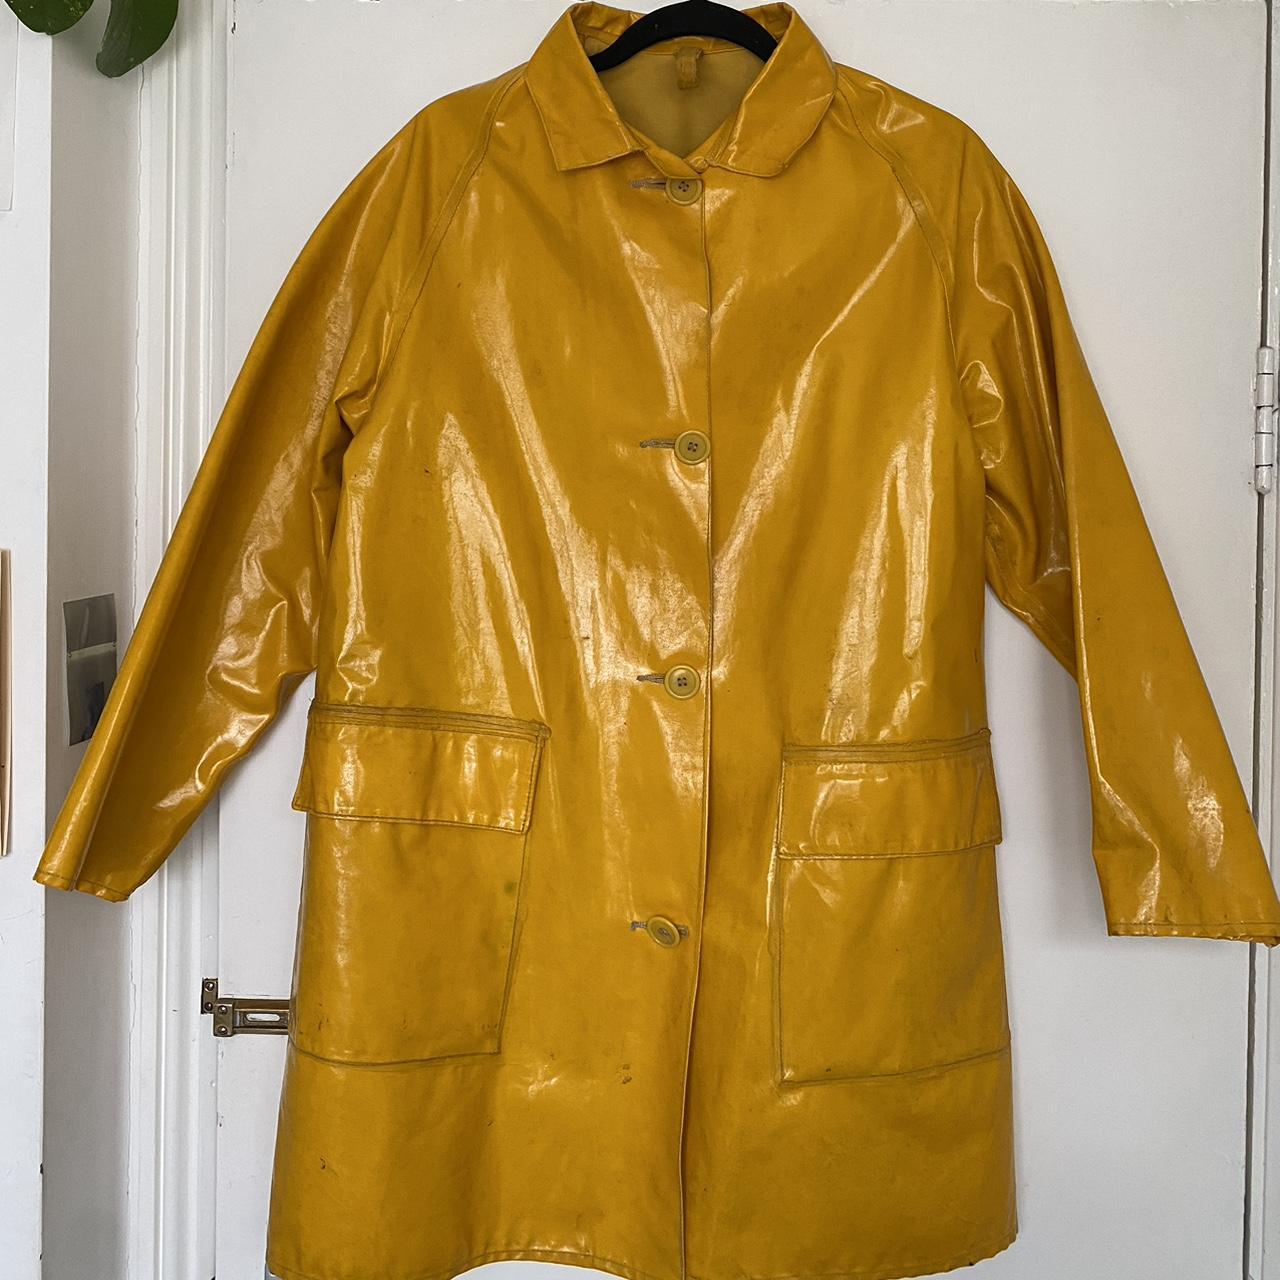 Genuine vintage yellow raincoat, 1960s Worn,... - Depop